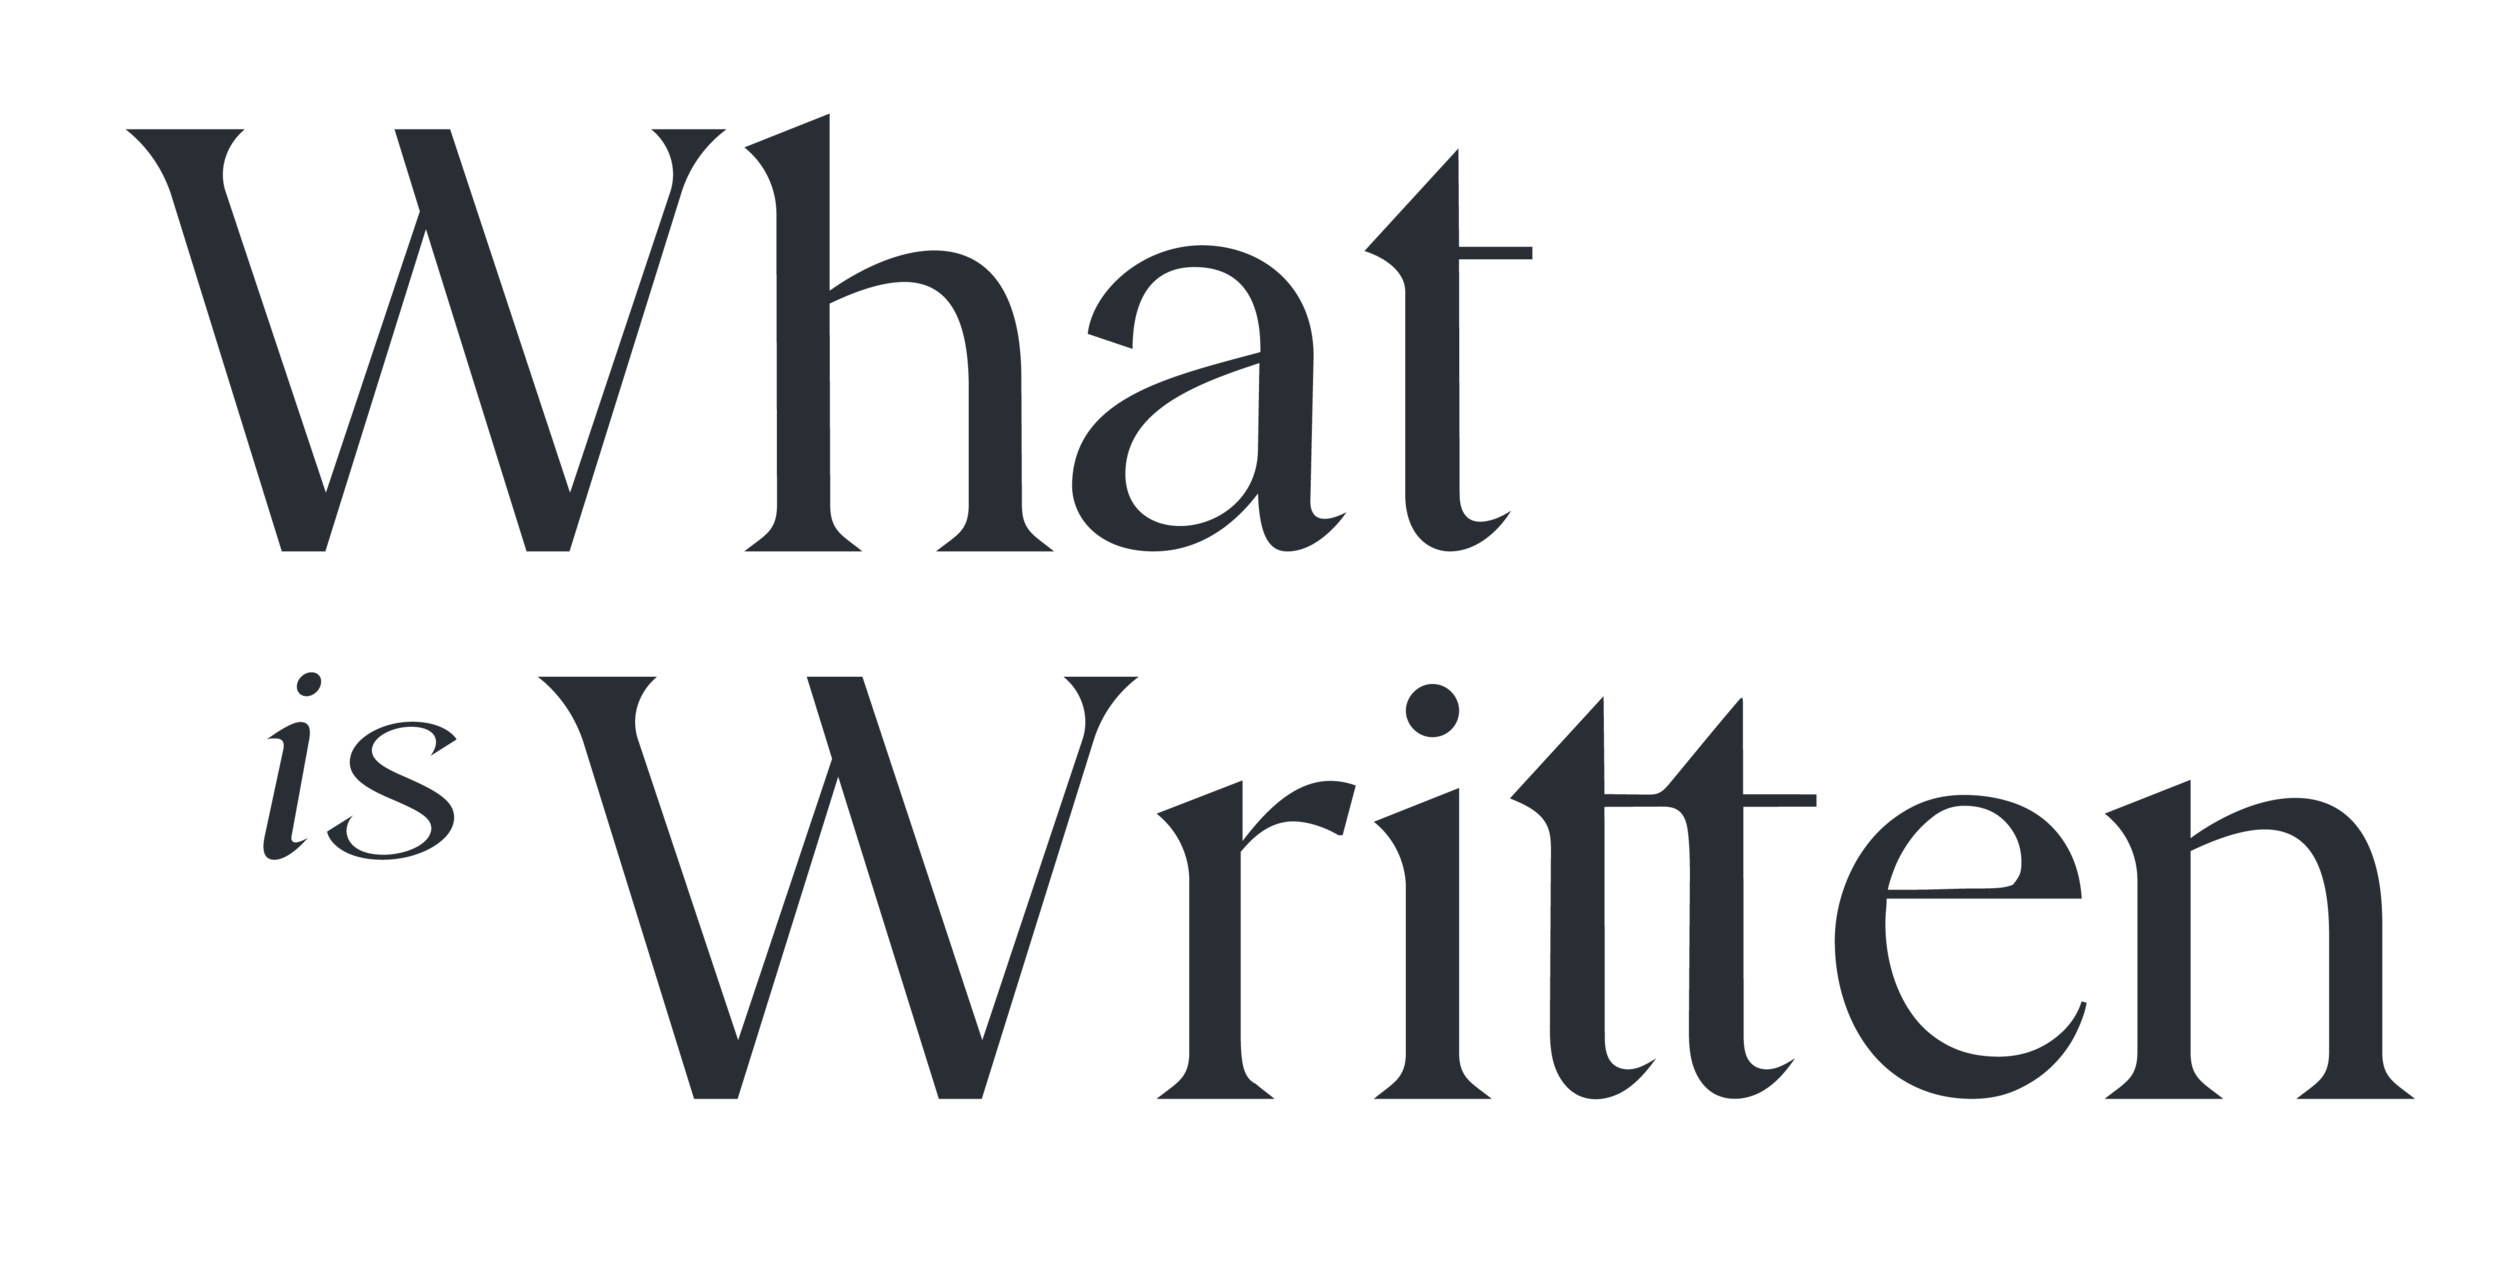 What is Written